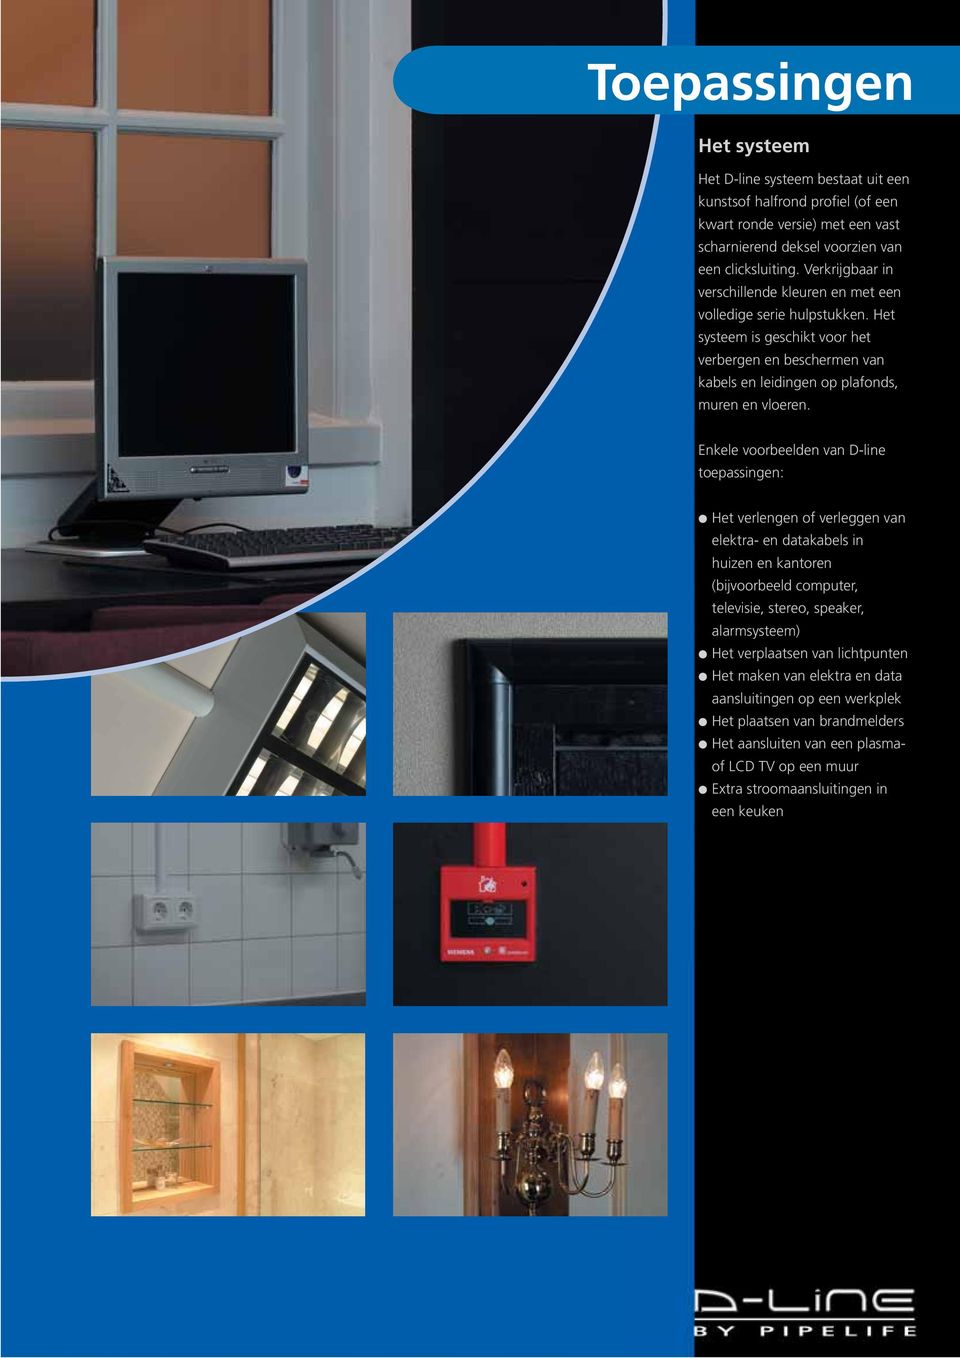 Enkele voorbeelden van D-line toepassingen: Het verlengen of verleggen van elektra- en datakabels in huizen en kantoren (bijvoorbeeld computer, televisie, stereo, speaker, alarmsysteem) Het